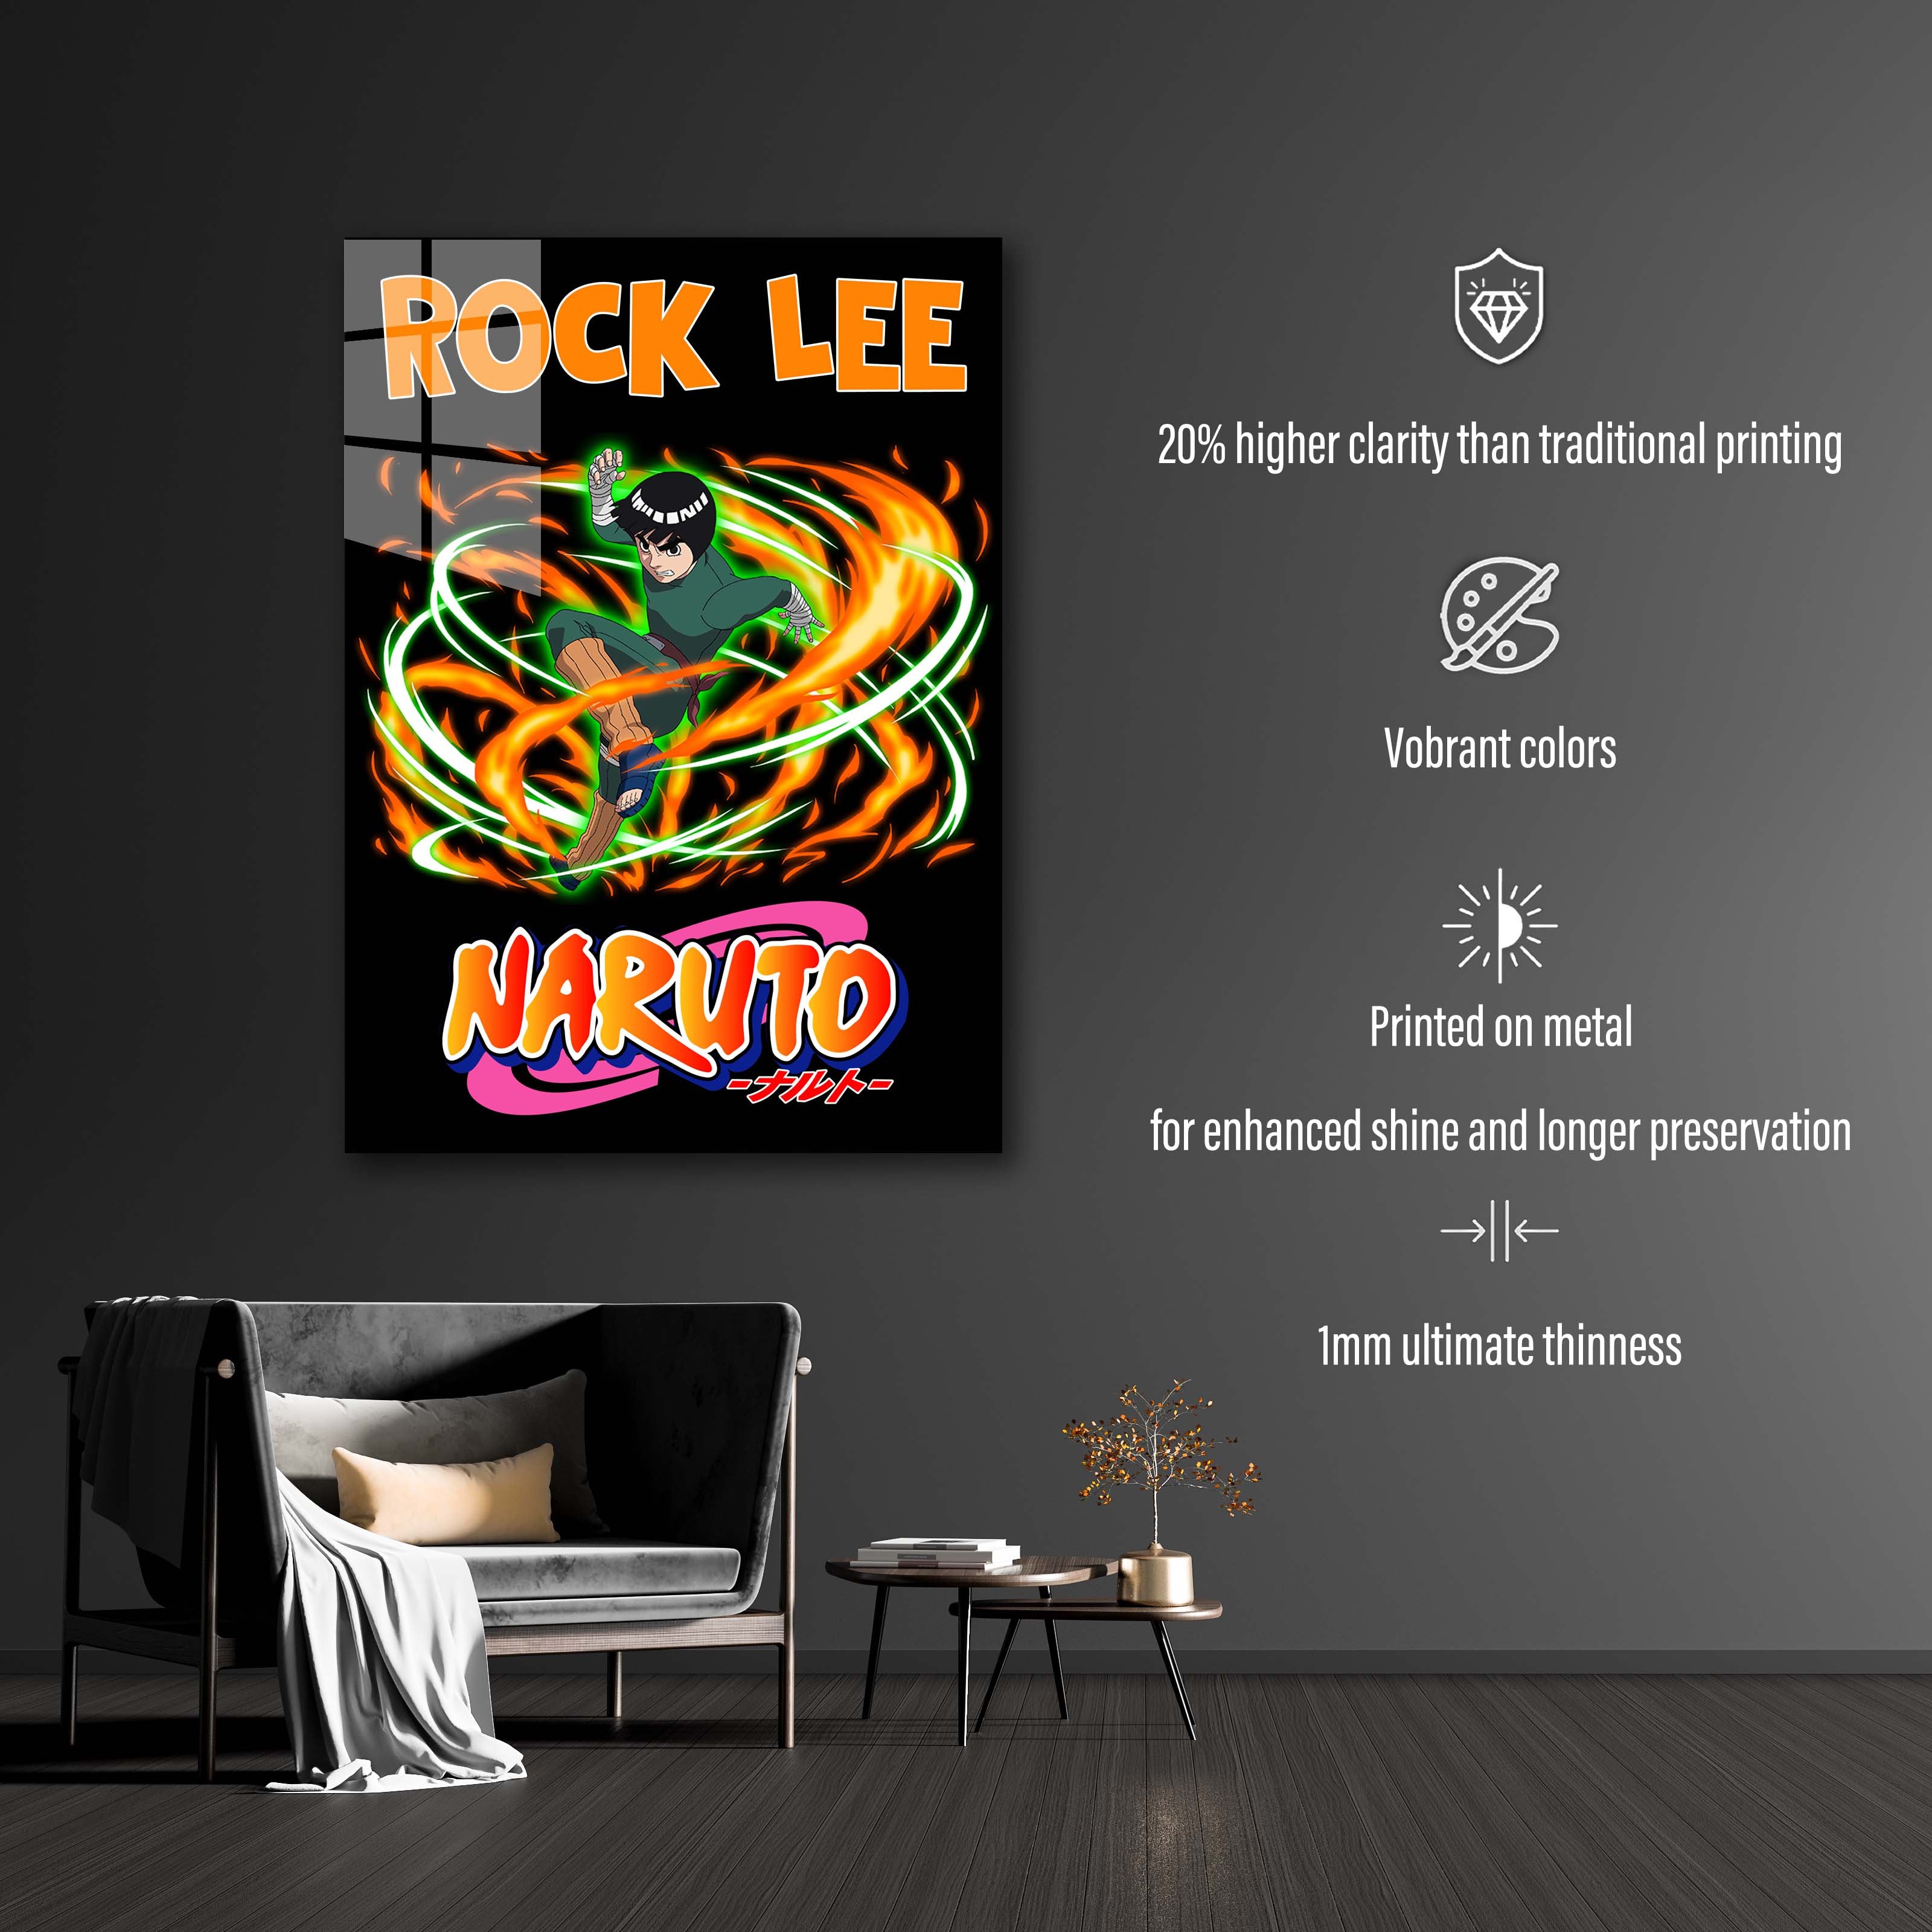 Rock Lee Fanart-designed by @Firkins